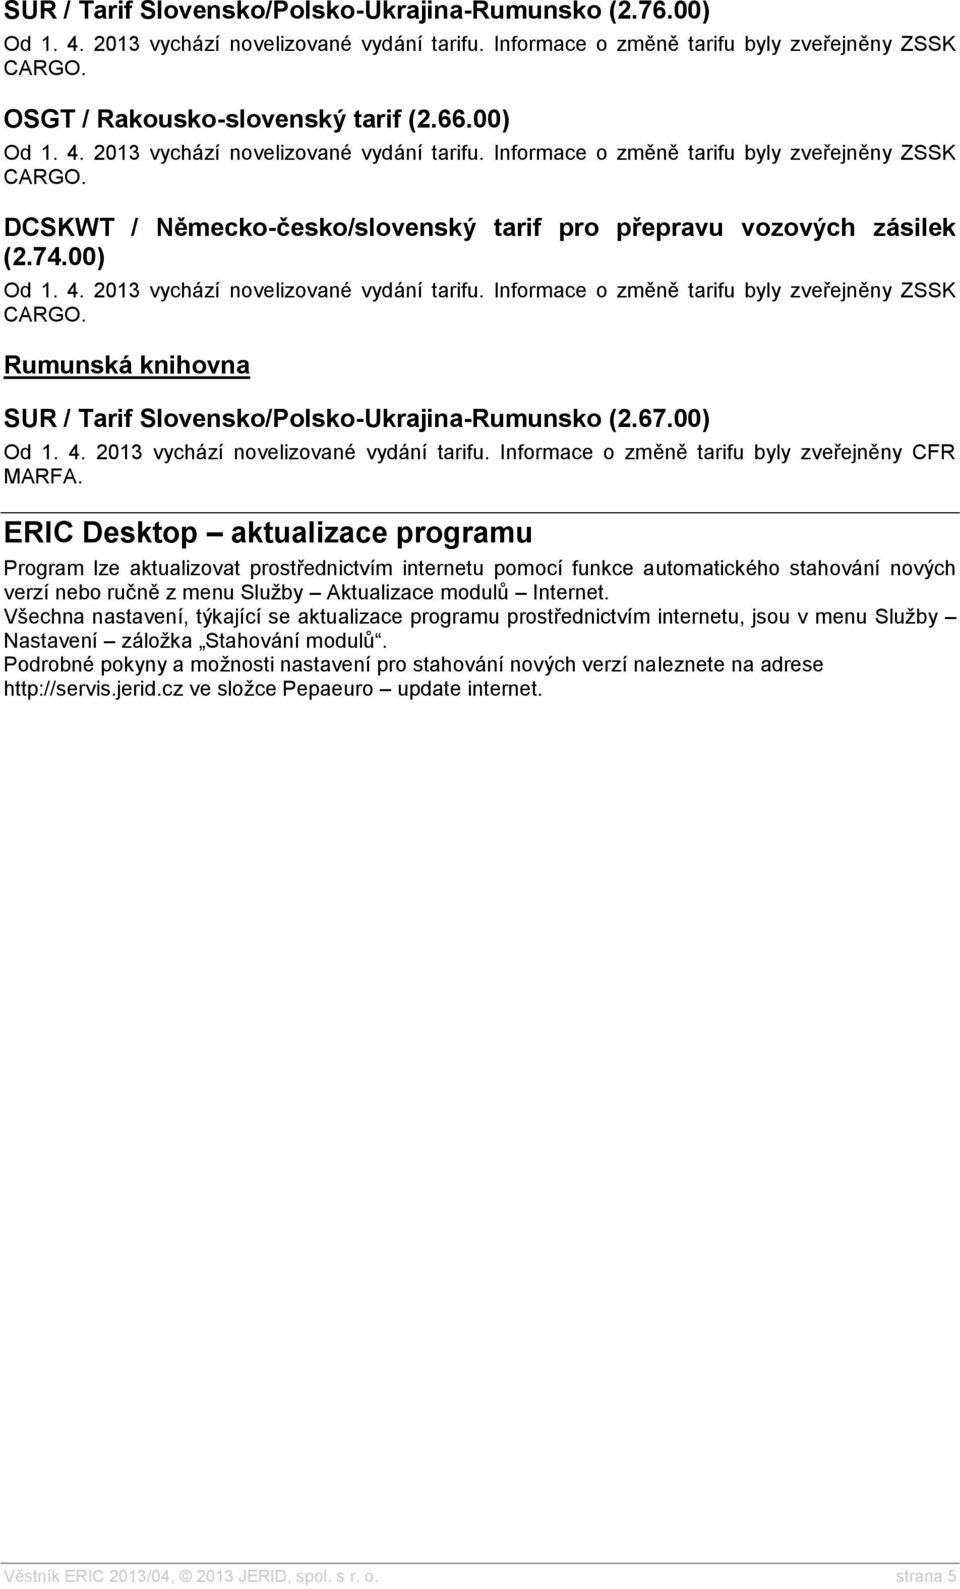 ERIC Desktop aktualizace programu Program lze aktualizovat prostřednictvím internetu pomocí funkce automatického stahování nových verzí nebo ručně z menu Služby Aktualizace modulů Internet.